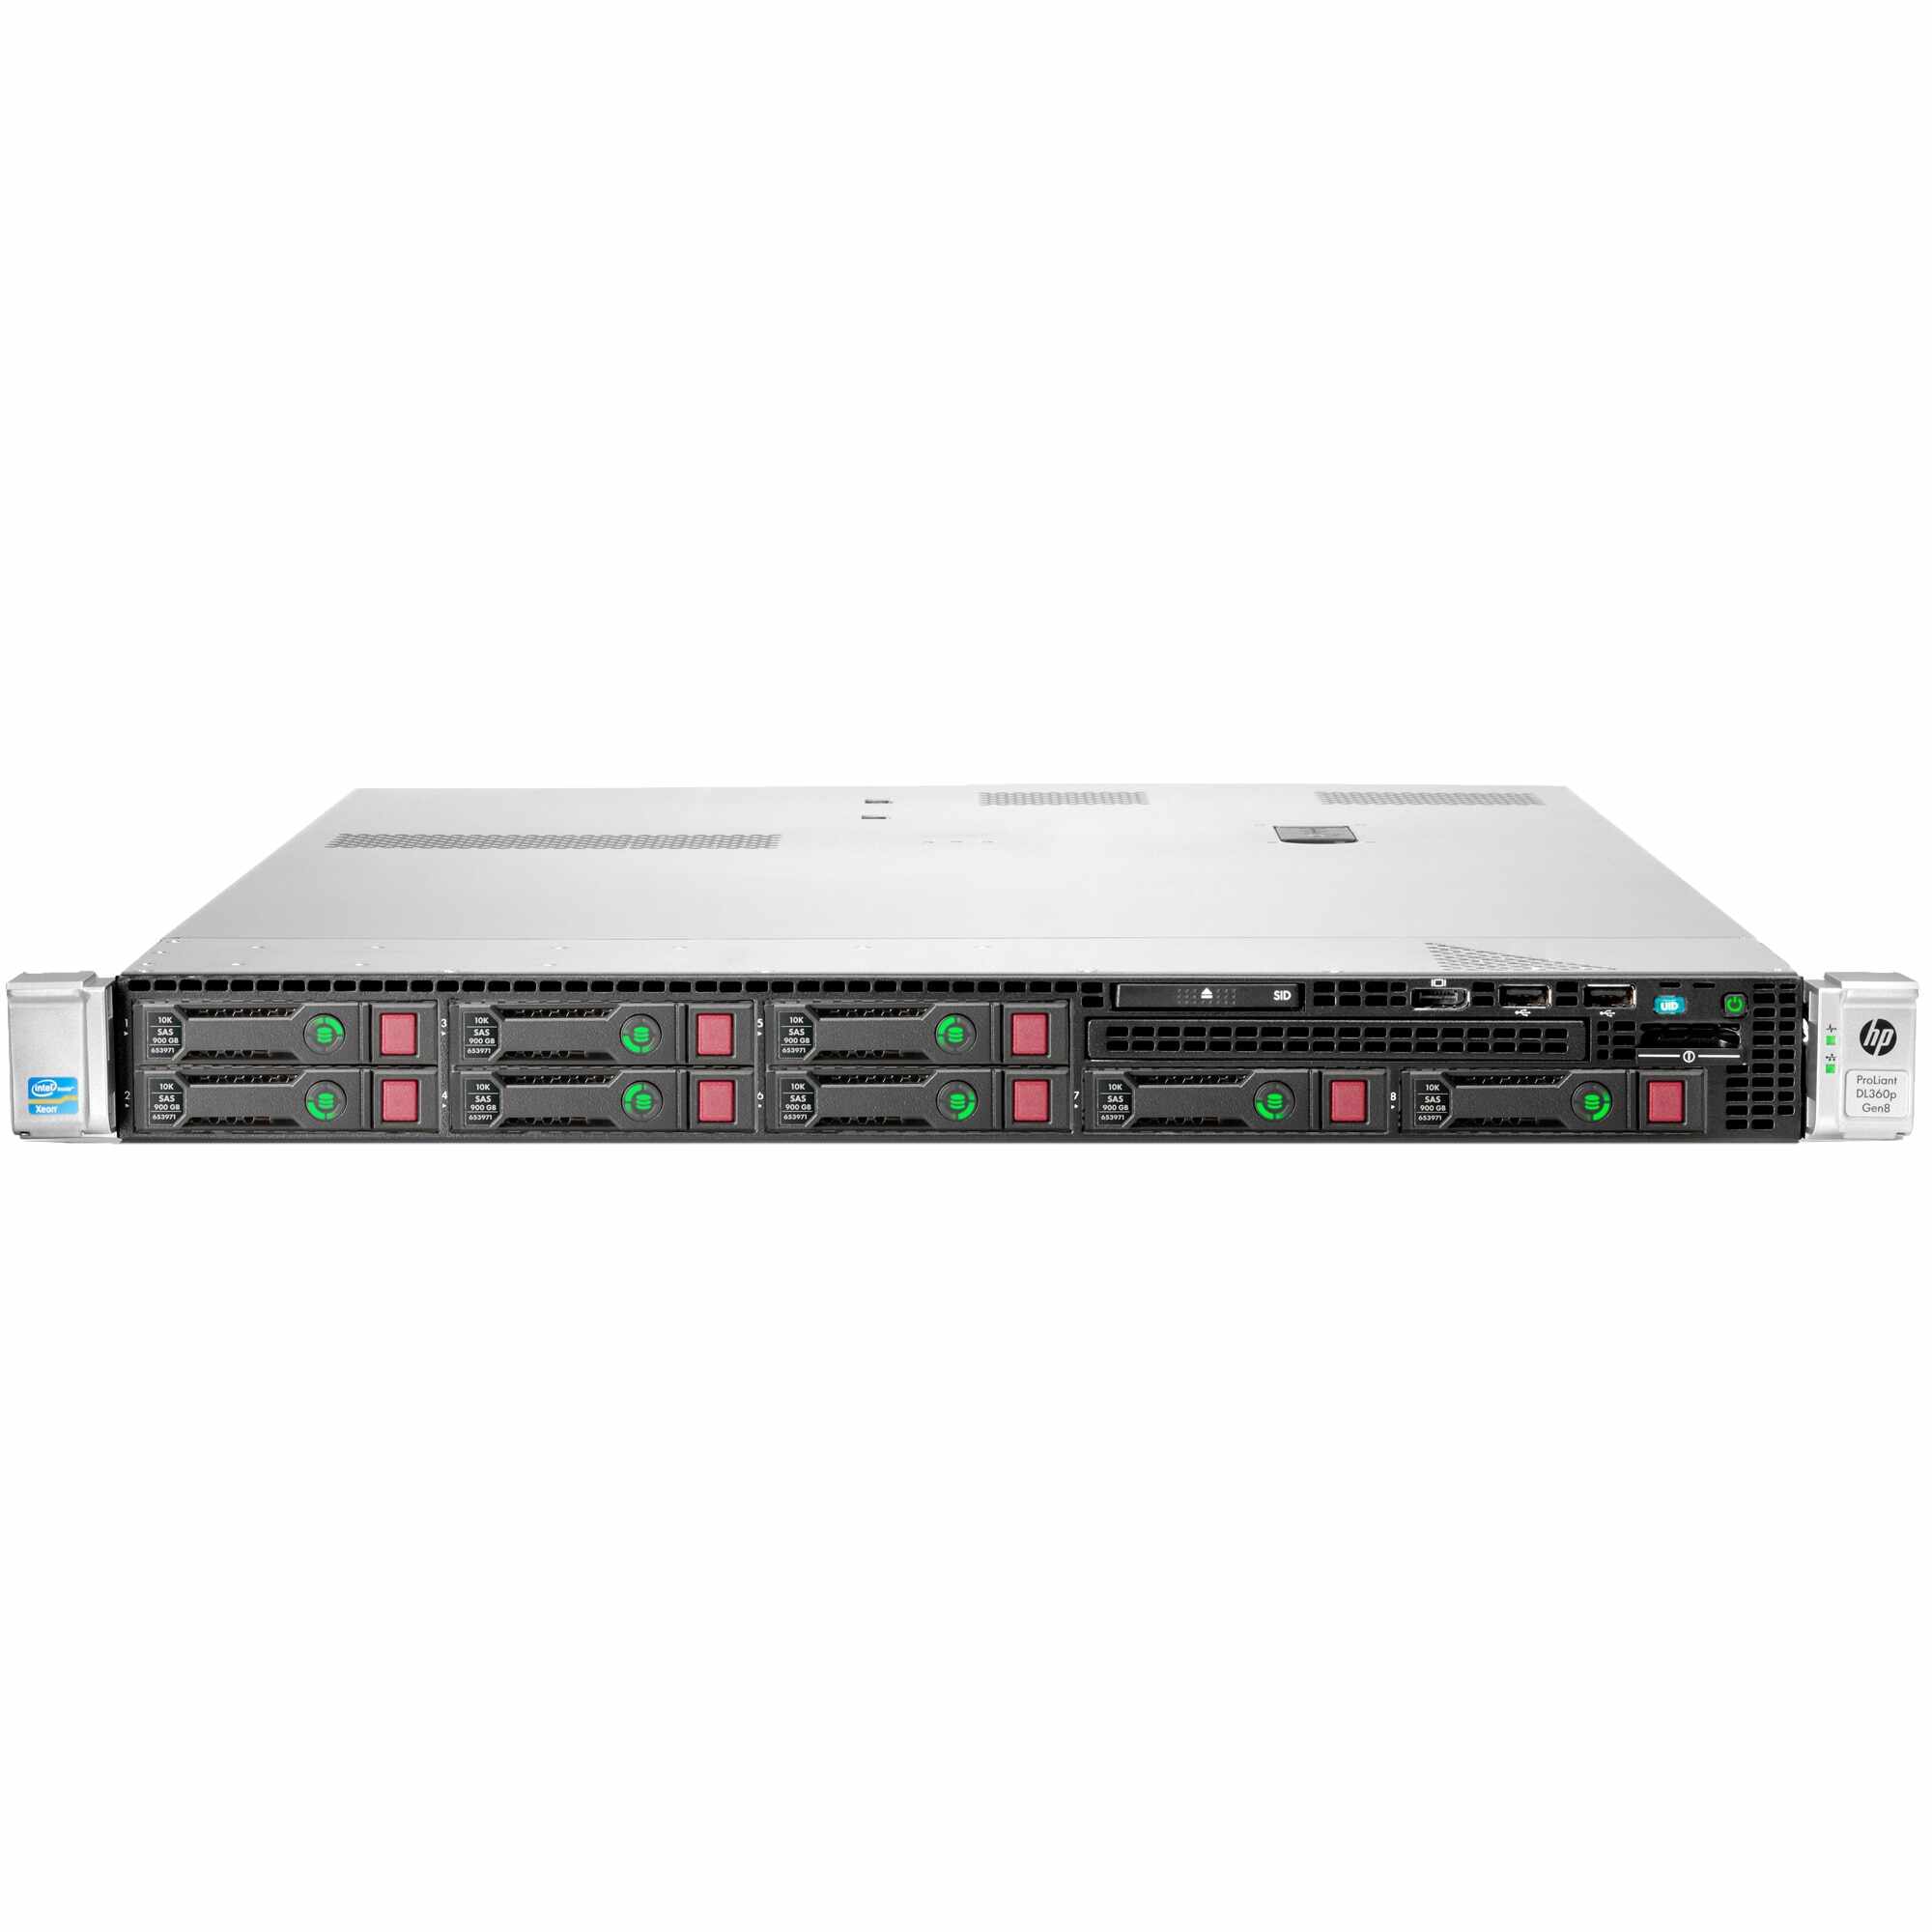 Server HP ProLiant DL360P G8, 1U, 2x Intel Hexa Core Xeon E5-2640 2.50 - 3.00GHz, 64GB DDR3 ECC Reg (8 x 8GB), 2 x 256GB SSD SATA , Raid P420i/512MB, 4 X 1Gb RJ-45, iLO 4 Advanced, 2x Surse 460W